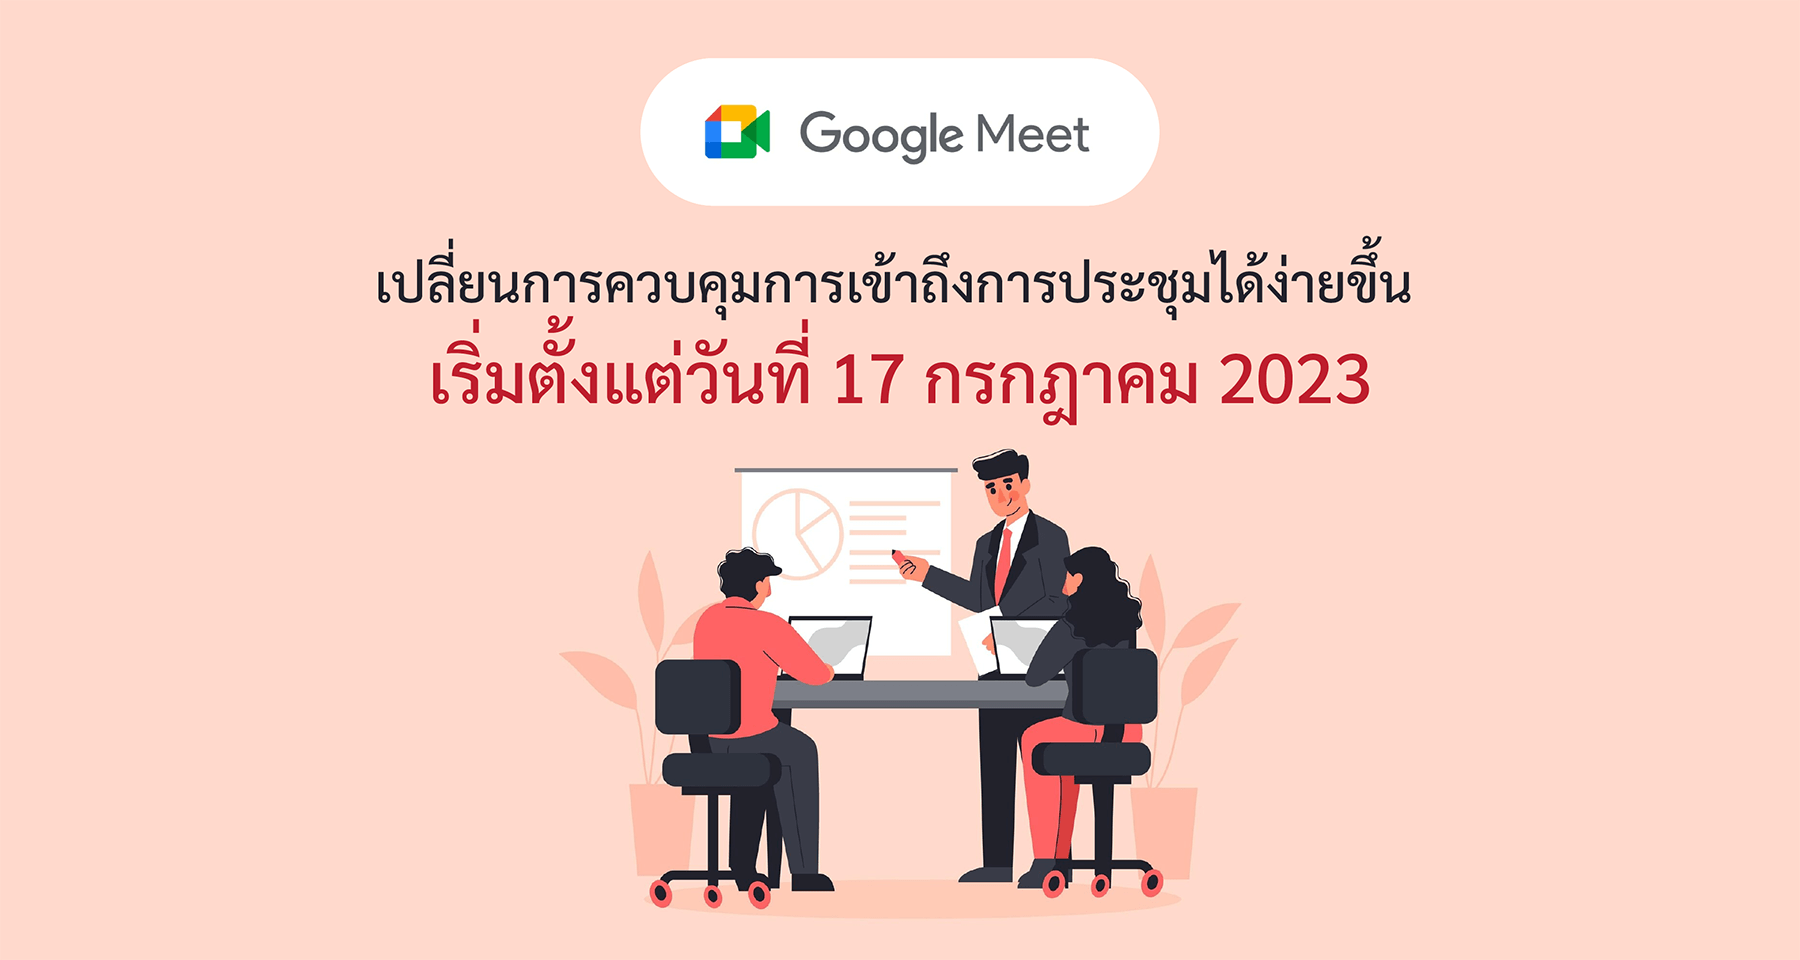 Google Meet เปลี่ยนการควบคุมการเข้าถึงการประชุมได้ง่ายขึ้น เริ่มตั้งแต่วันที่ 17 กรกฎาคม 2023